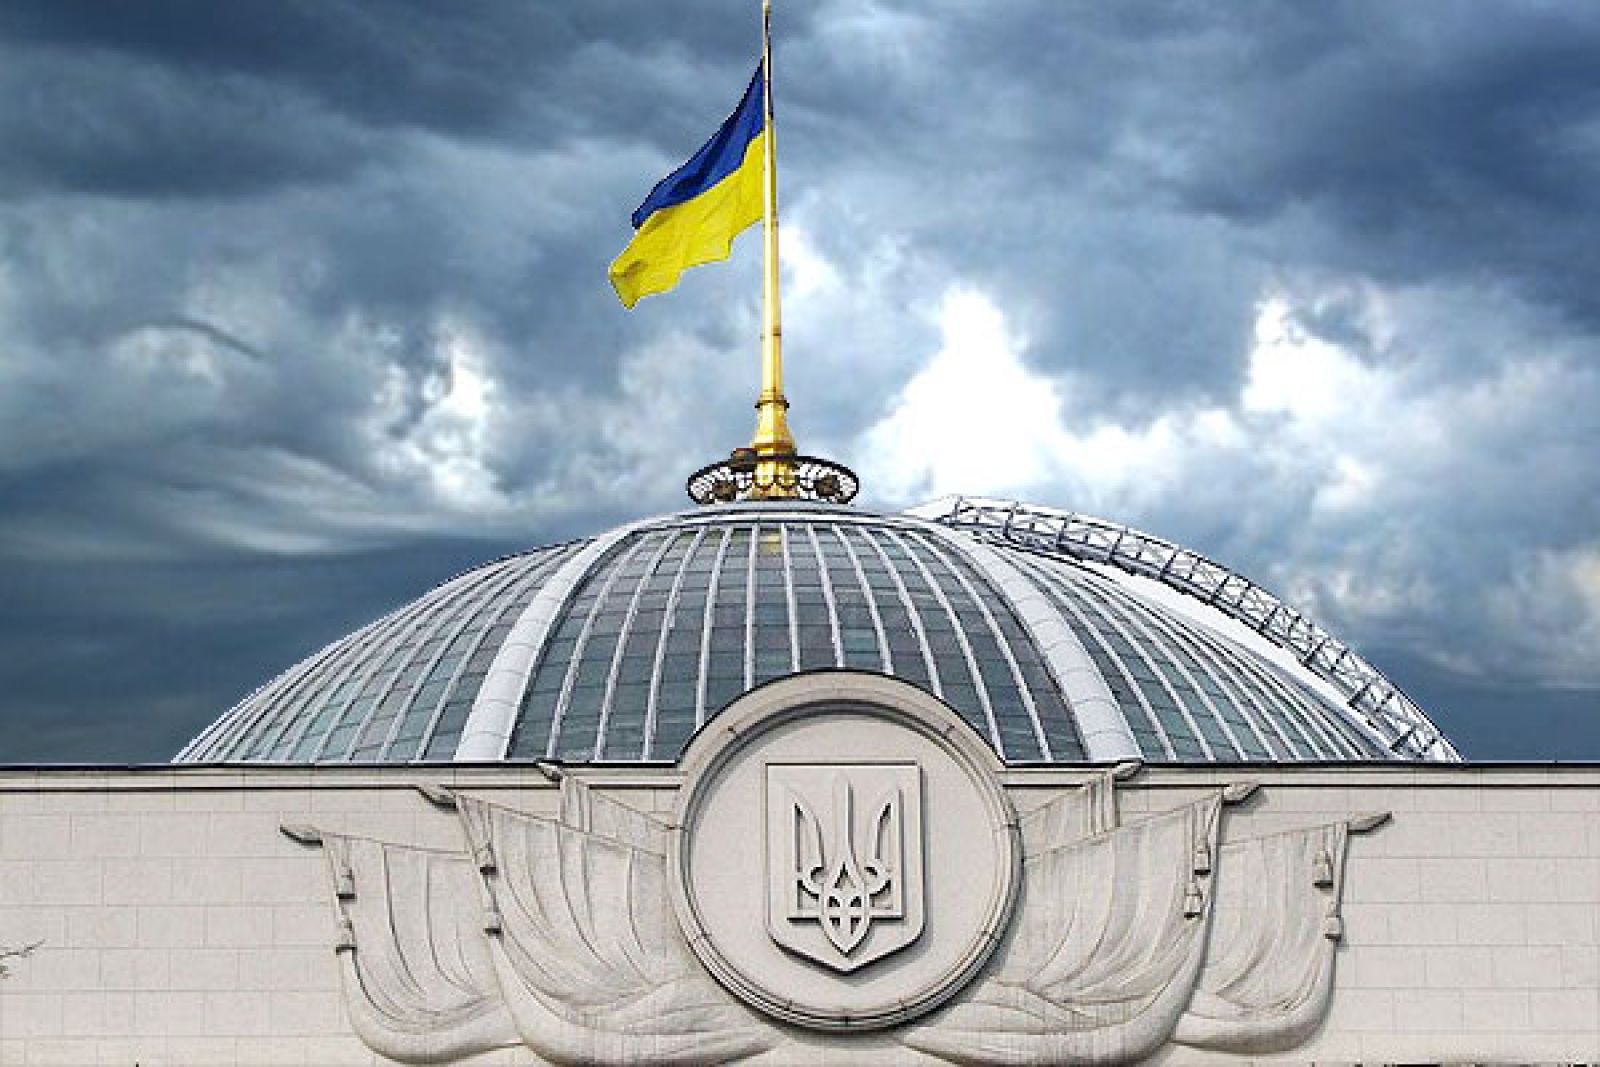  Верховная Рада с треском провалила одну из самых скандальных правок закона по Донбассу в отношении России - подробности